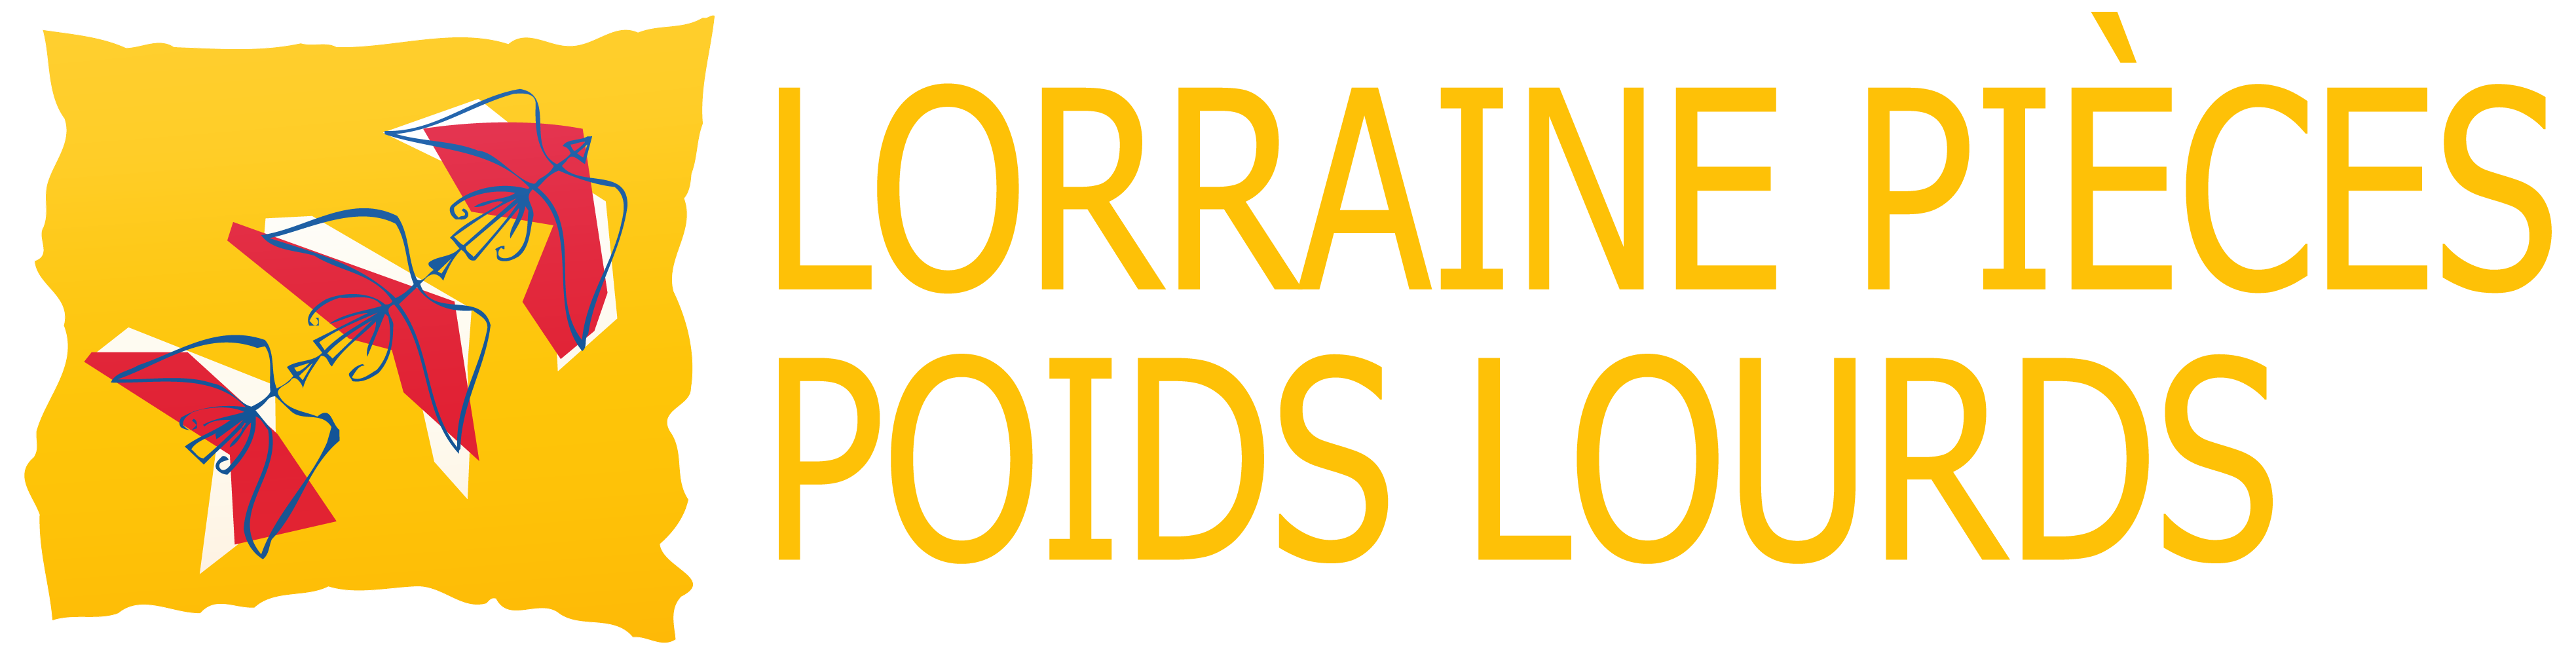 logo-LORRAINE PIECES POIDS LOURDS